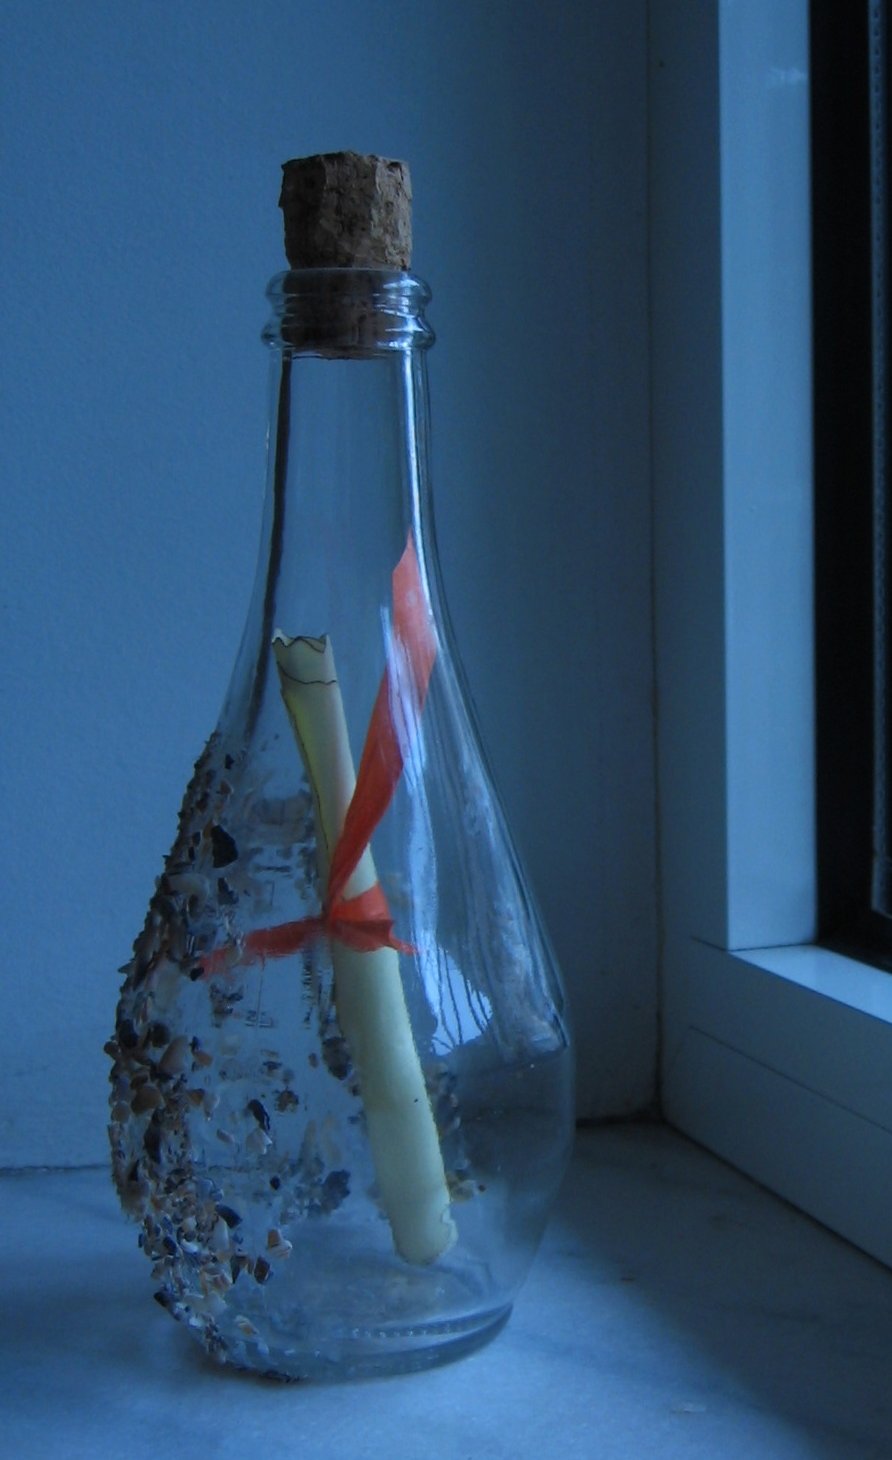 Beach-stranded bottle